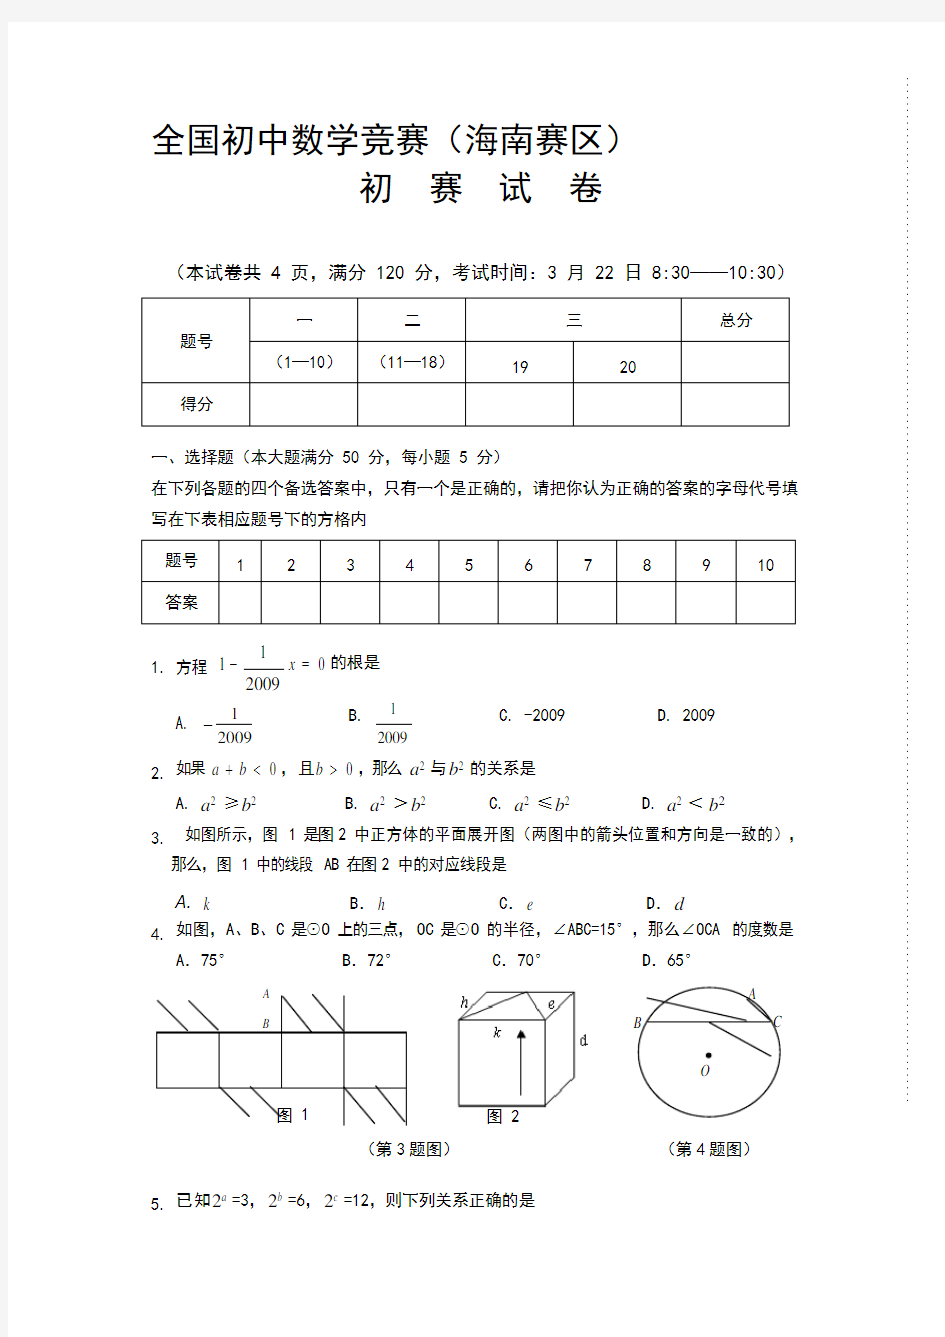 (完整版)【2019年整理】初中数学竞赛试题及答案,推荐文档